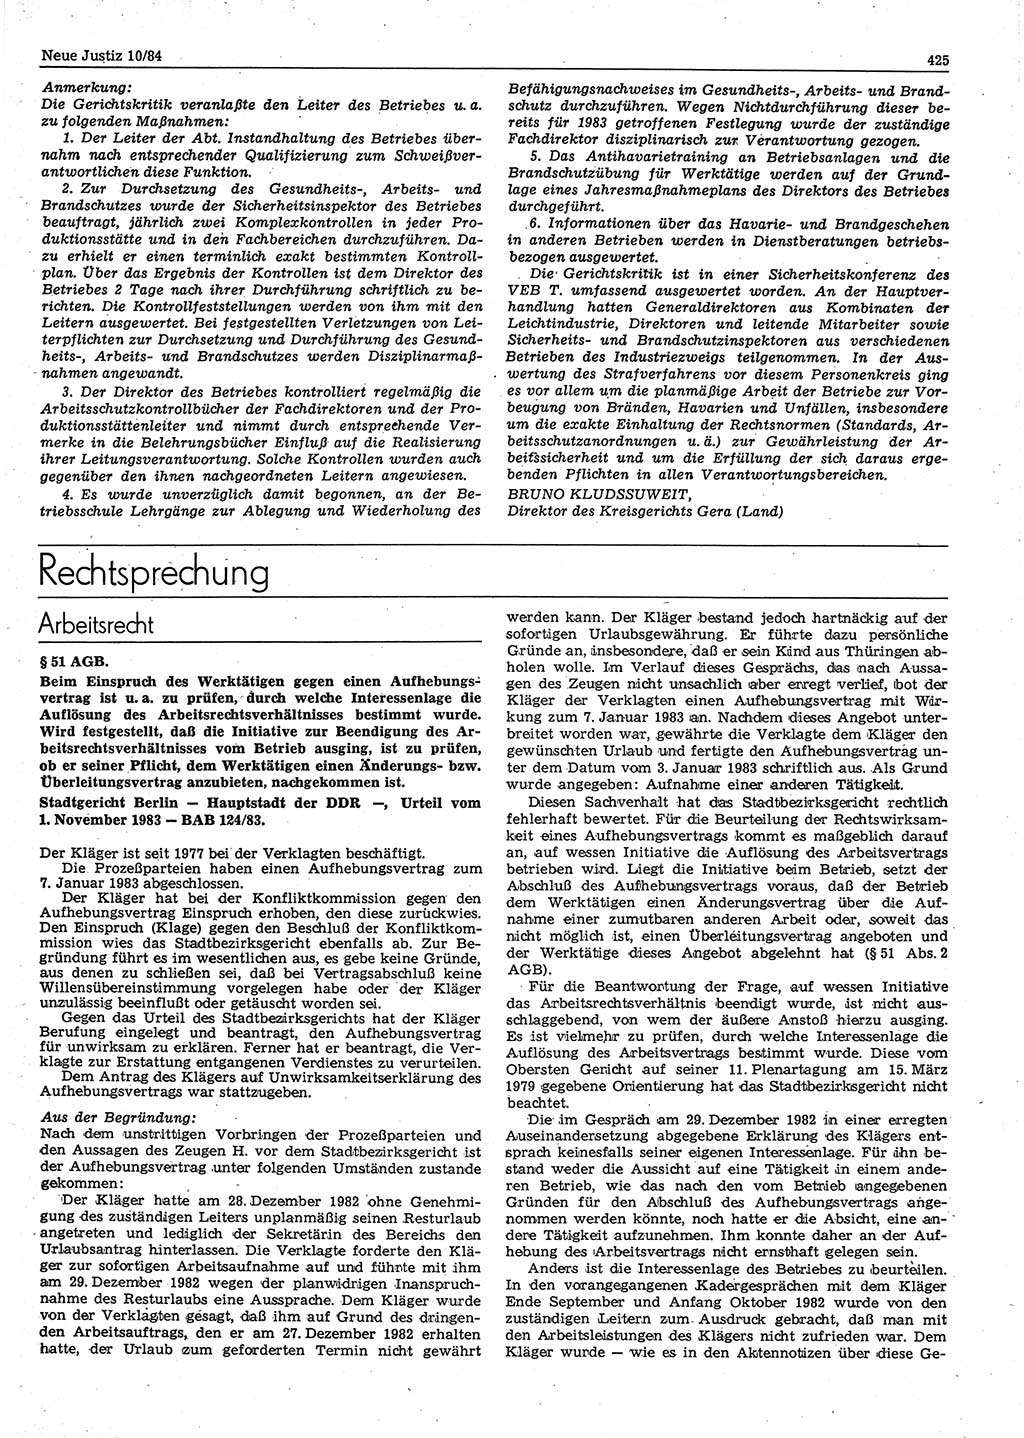 Neue Justiz (NJ), Zeitschrift für sozialistisches Recht und Gesetzlichkeit [Deutsche Demokratische Republik (DDR)], 38. Jahrgang 1984, Seite 425 (NJ DDR 1984, S. 425)